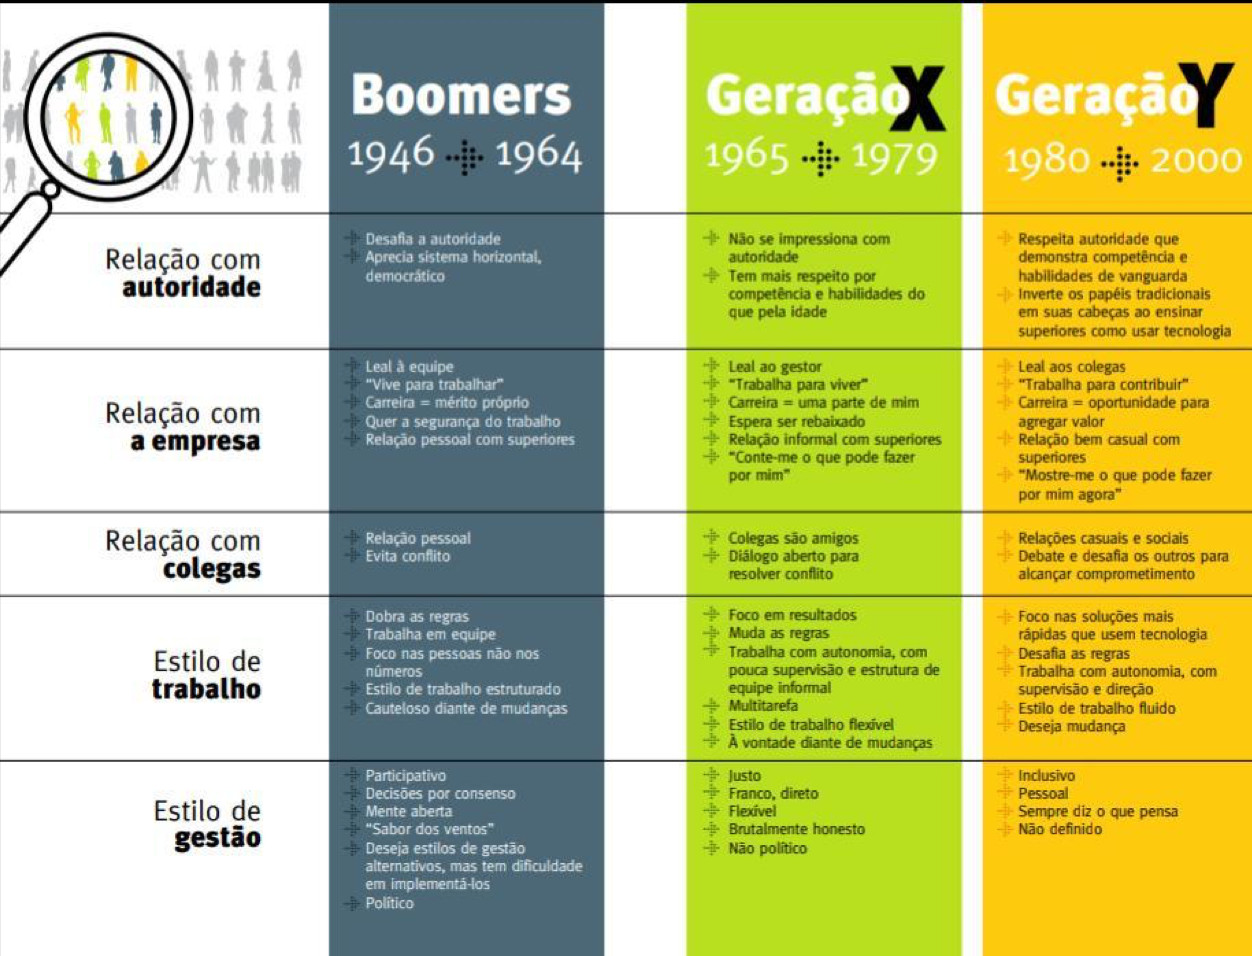 A imagem mostra uma tabela comparativa entre "baby boomers", "geração z", "geração Y" em relação à: como lida com autoridade, relação com a empresa, relação com colegas, estilo de trabalho, estilo de gestão.